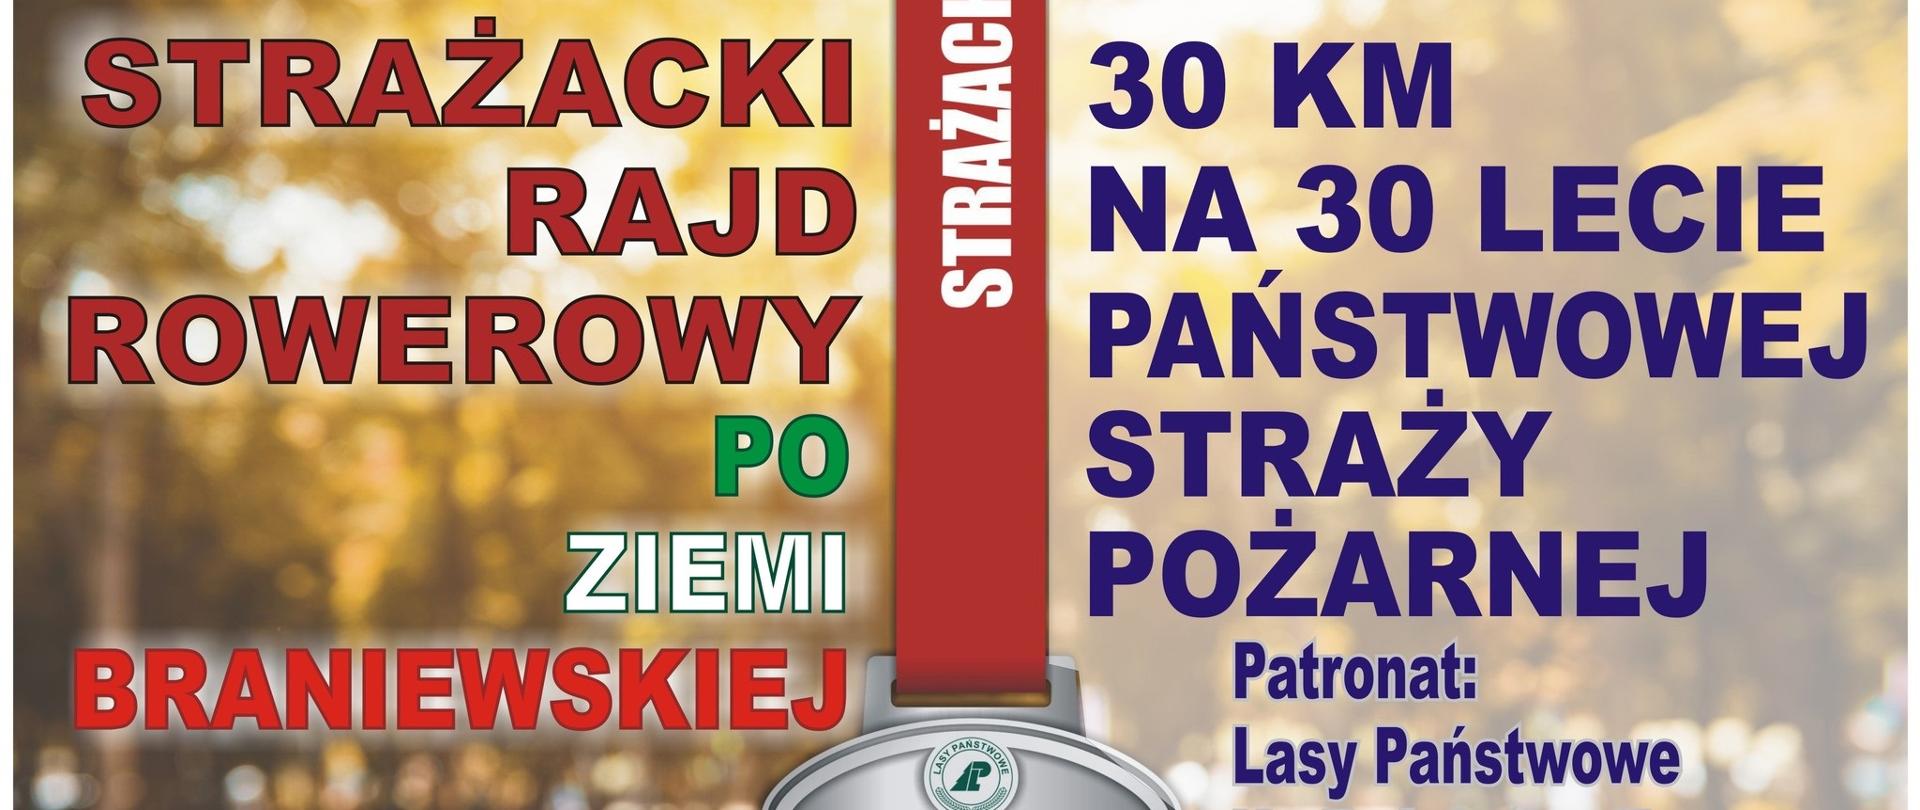 Plakat, strażacki rajd rowerowy po ziemi braniewskiej, 30 kilometrów na 30 lecie państwowej straży pożarnej. Na dole logo Lasów Państwowych i PSP.